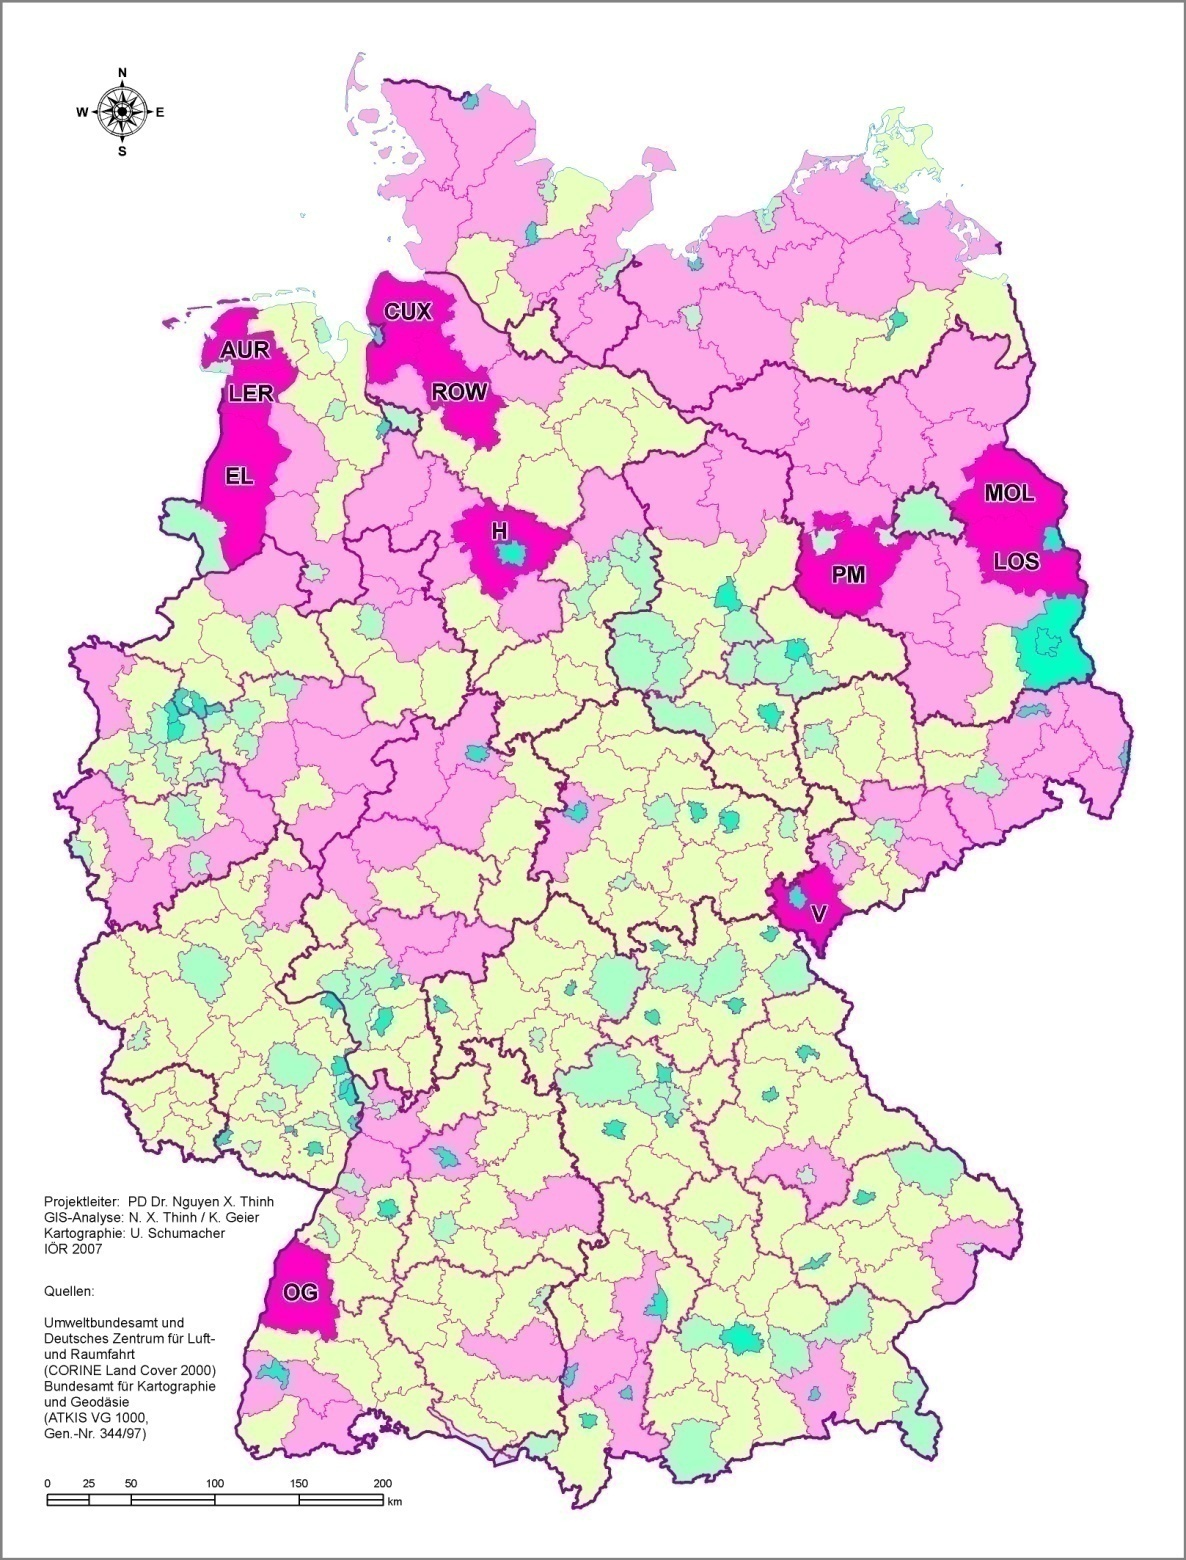 Zerklüftungsgrad der Siedlungsfläche nach Kreisen und kreisfreien Städten in Deutschland 2000 *